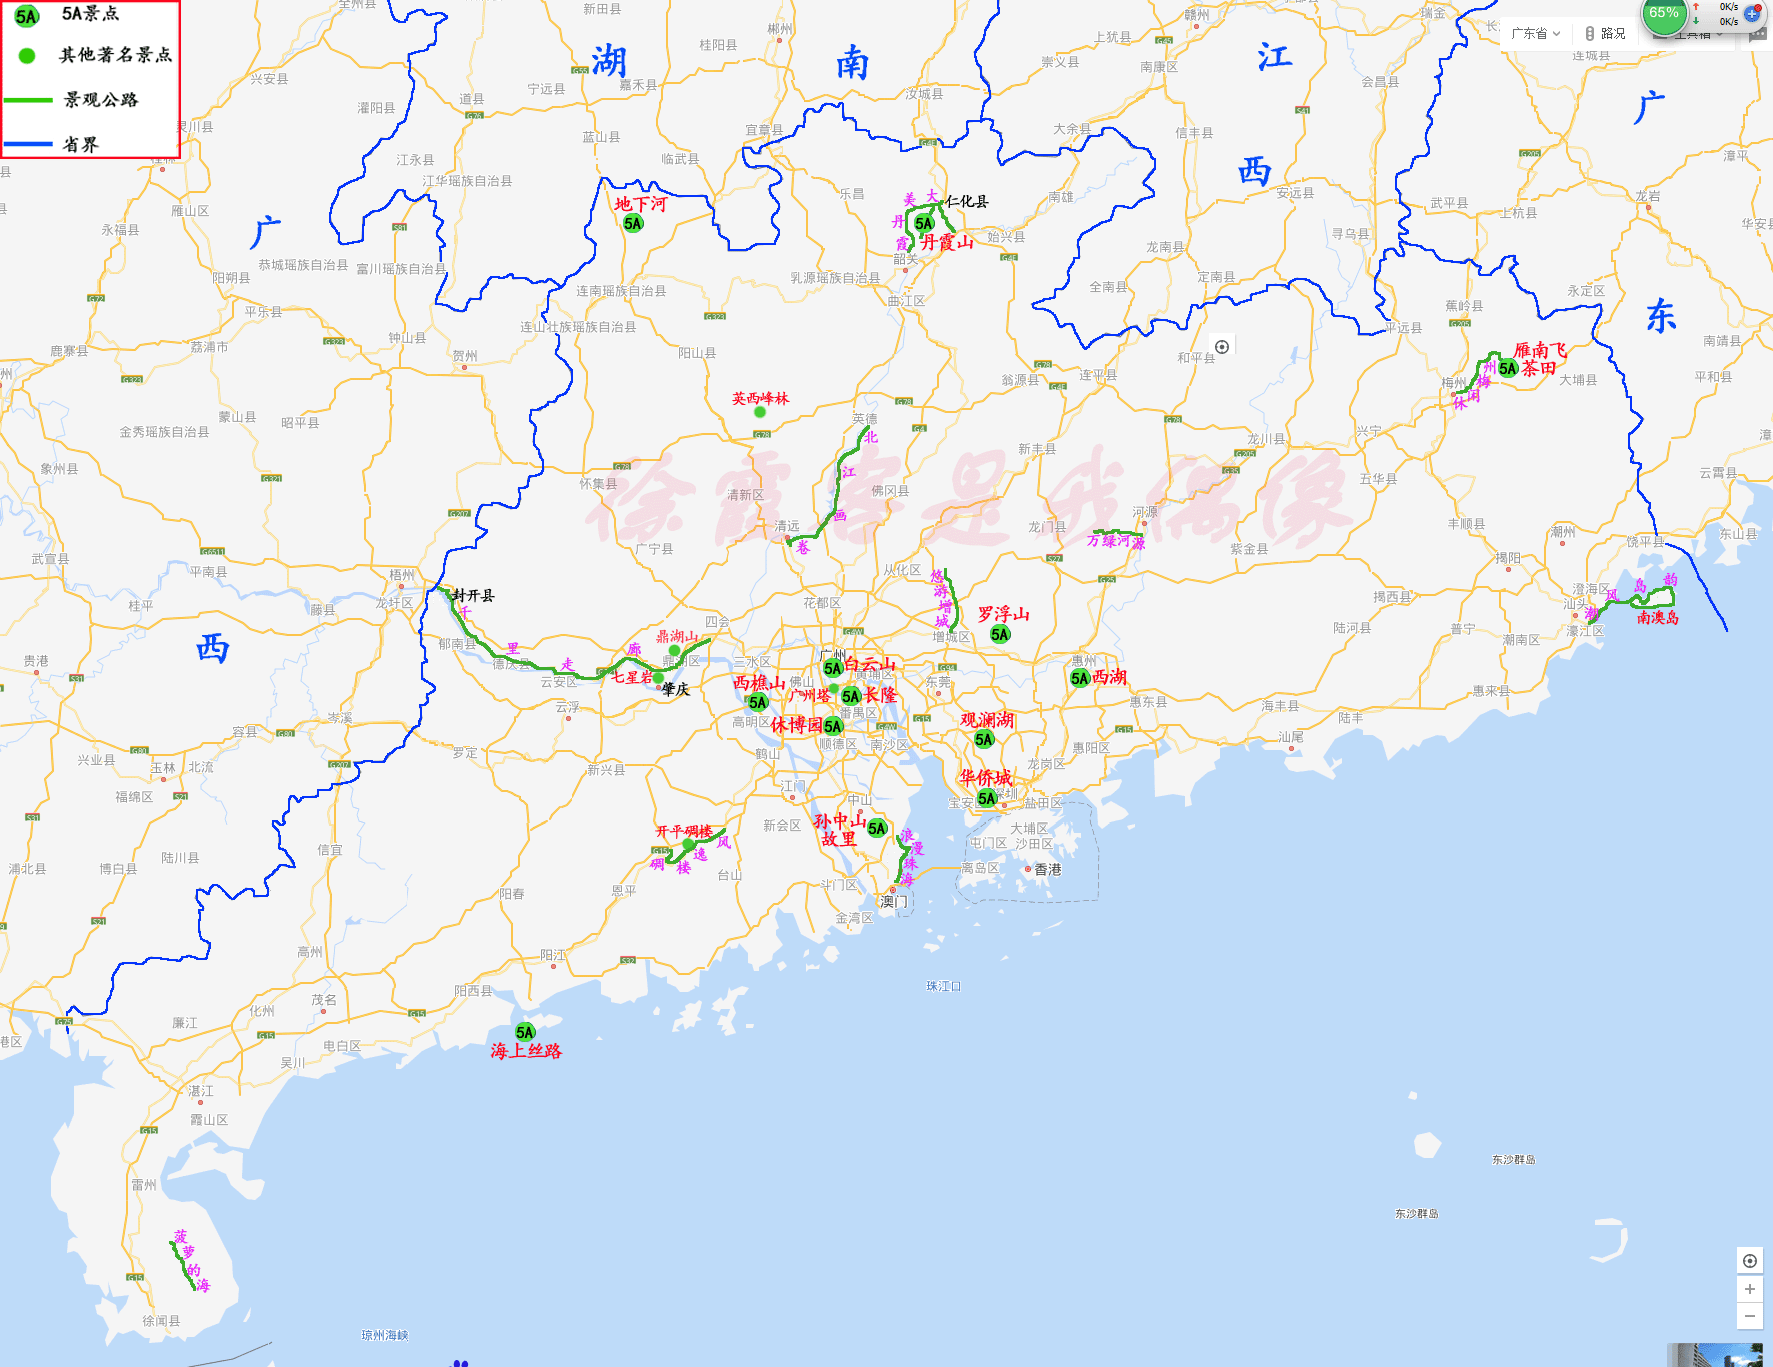 最详细的地图_中国超详细的纺织服装产业分布地图,内衣名镇广东最多